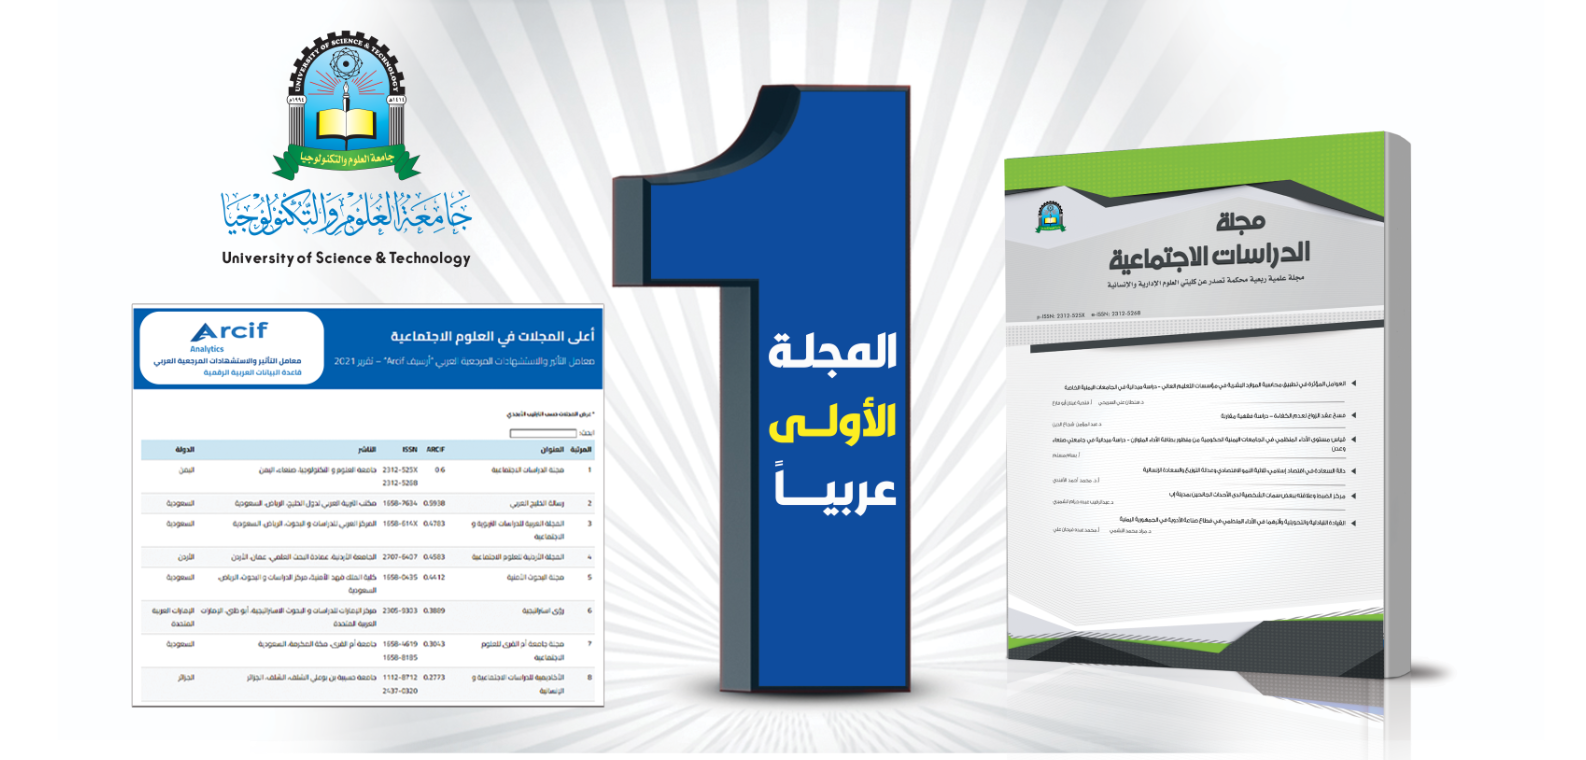 جامعة العلوم والتكنولوجيا الاولى عربياً في تصنيف المجلات العلمية